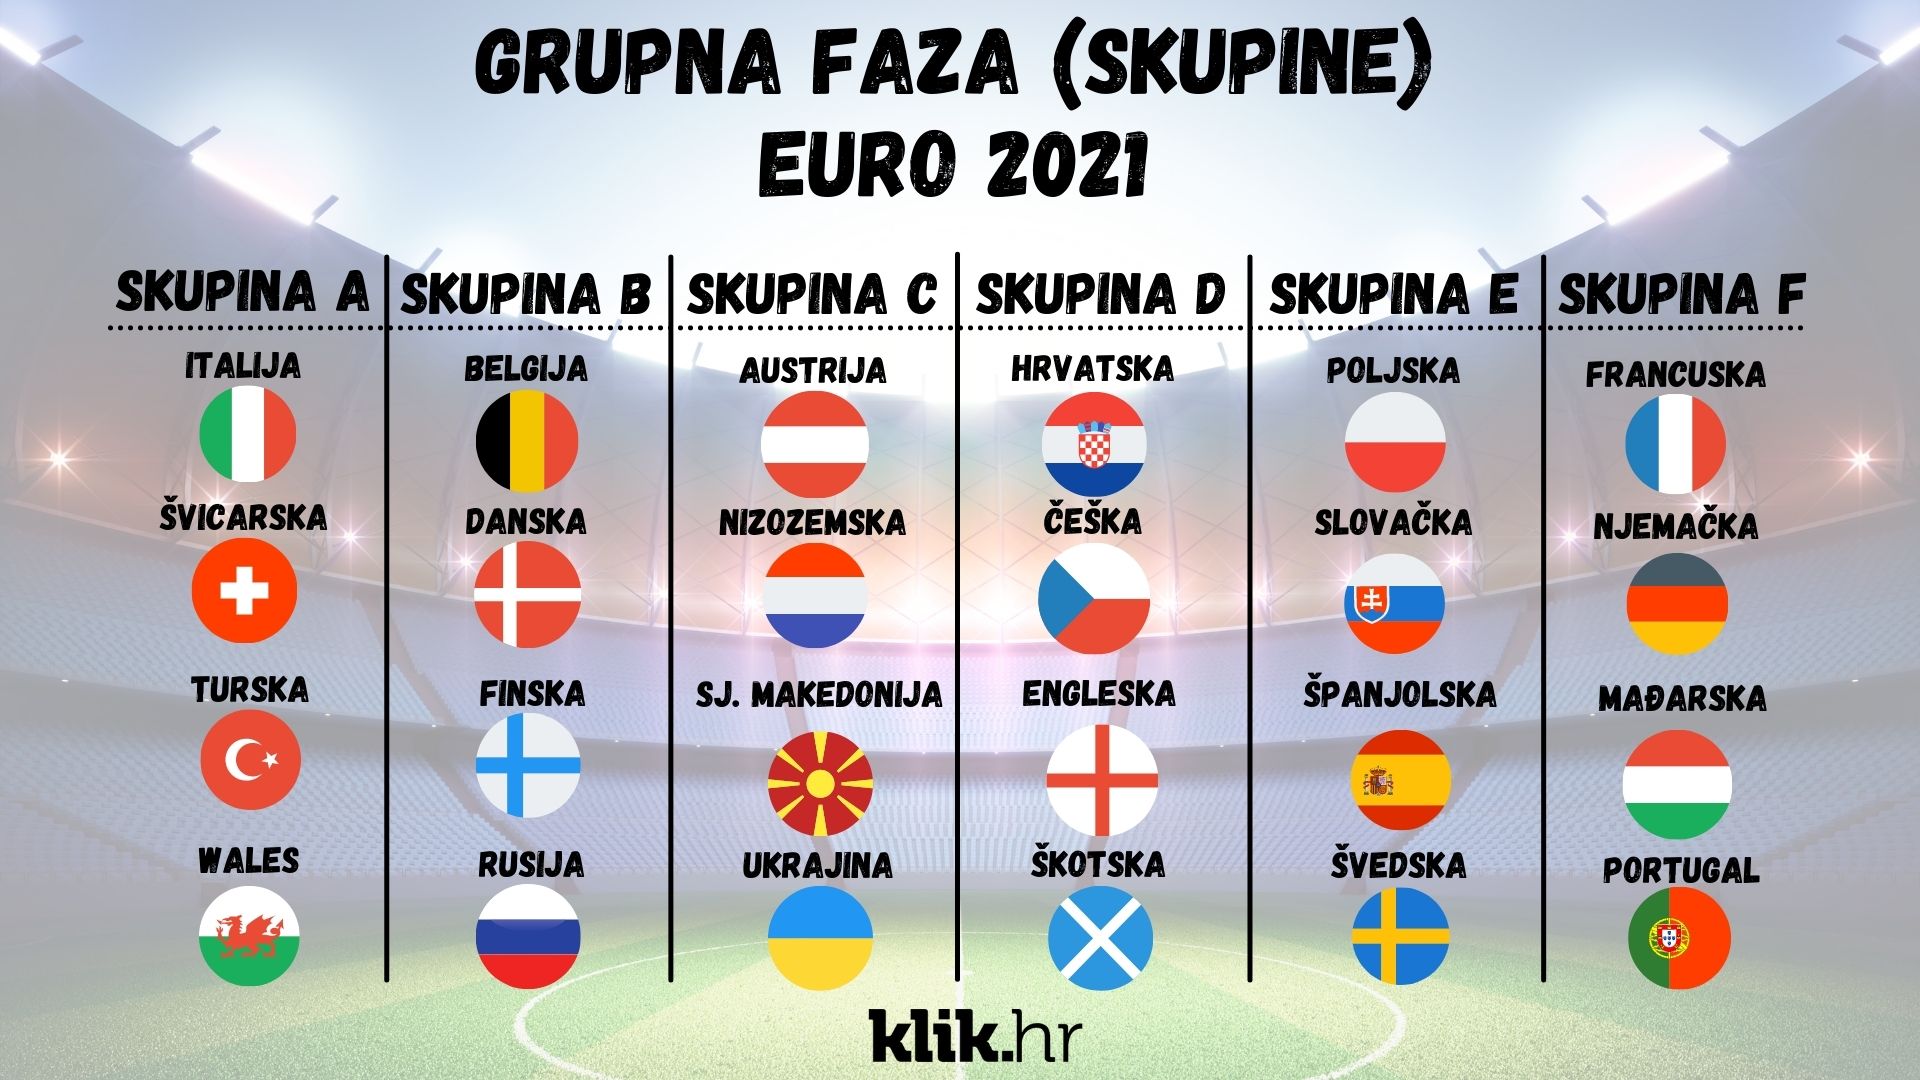 Grupna faza (skupine) EURO 2021